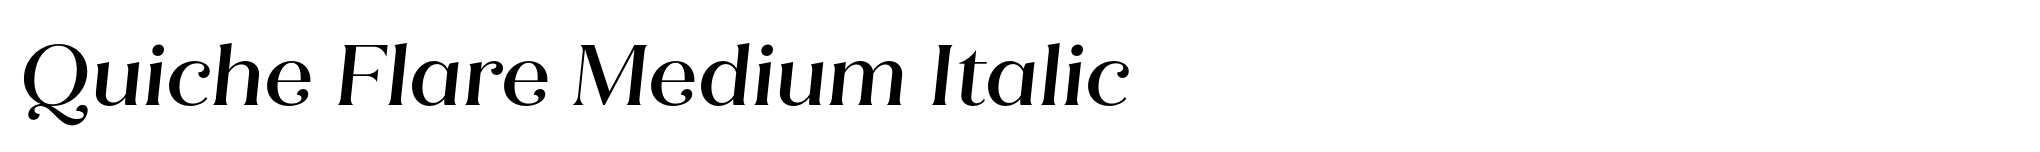 Quiche Flare Medium Italic image